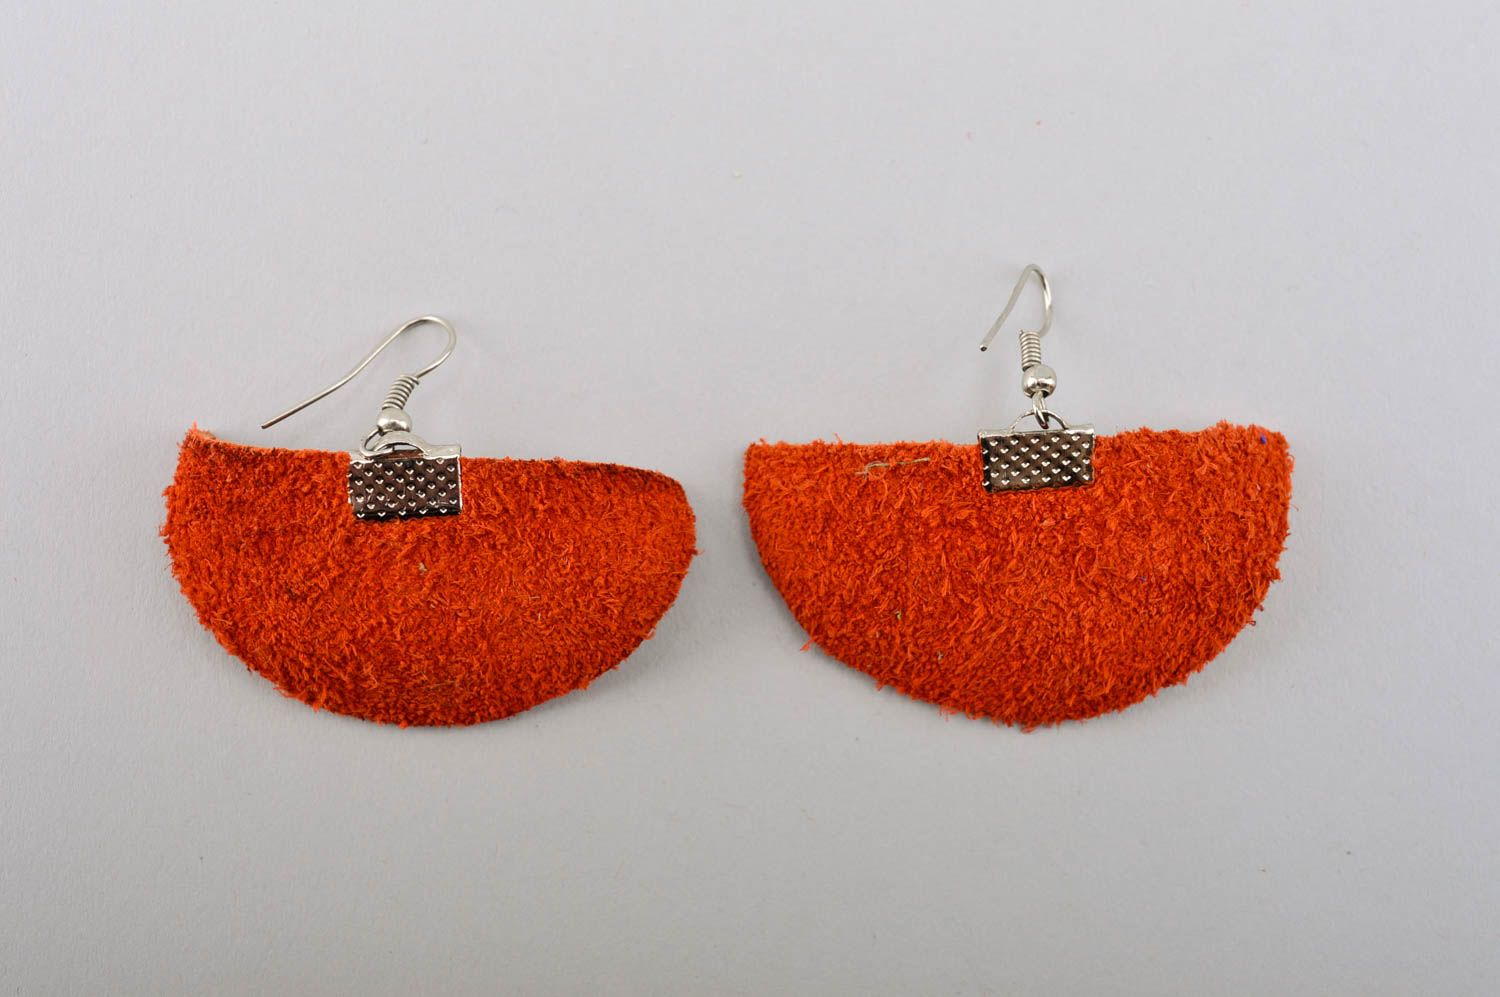 Handmade earrings leather earrings designer earrings unusual jewelry gift ideas photo 3